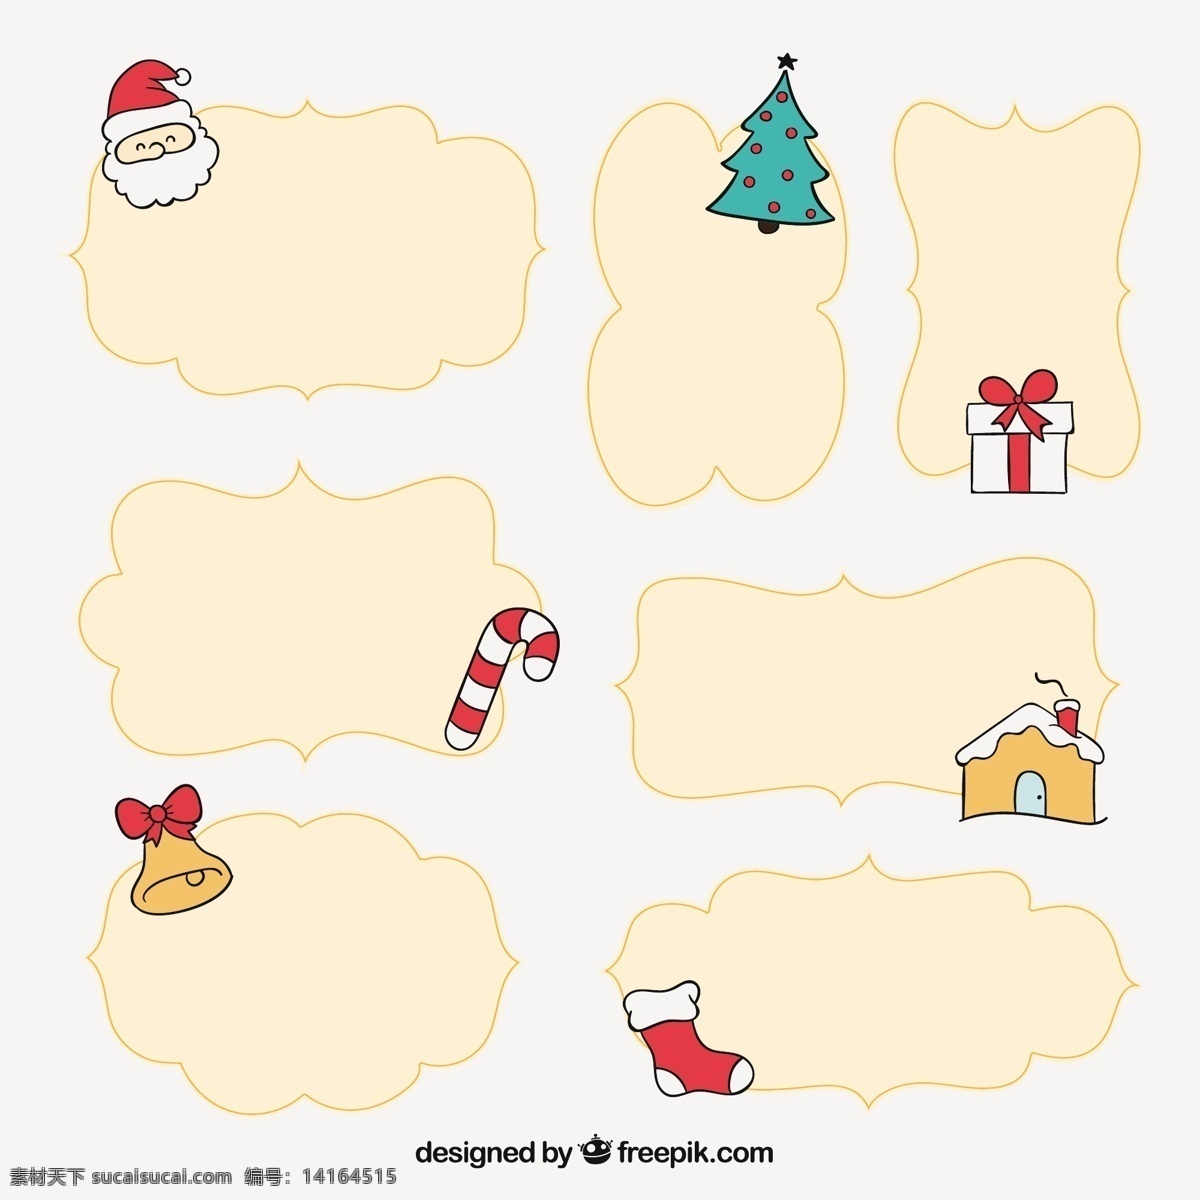 粗略 圣诞 框架 集 架 圣诞节 标签 一方面 相框 圣诞快乐 冬天 手绘的 快乐的 庆祝的节日 节日快乐 圣诞架 手工绘图 绘制 季节 白色